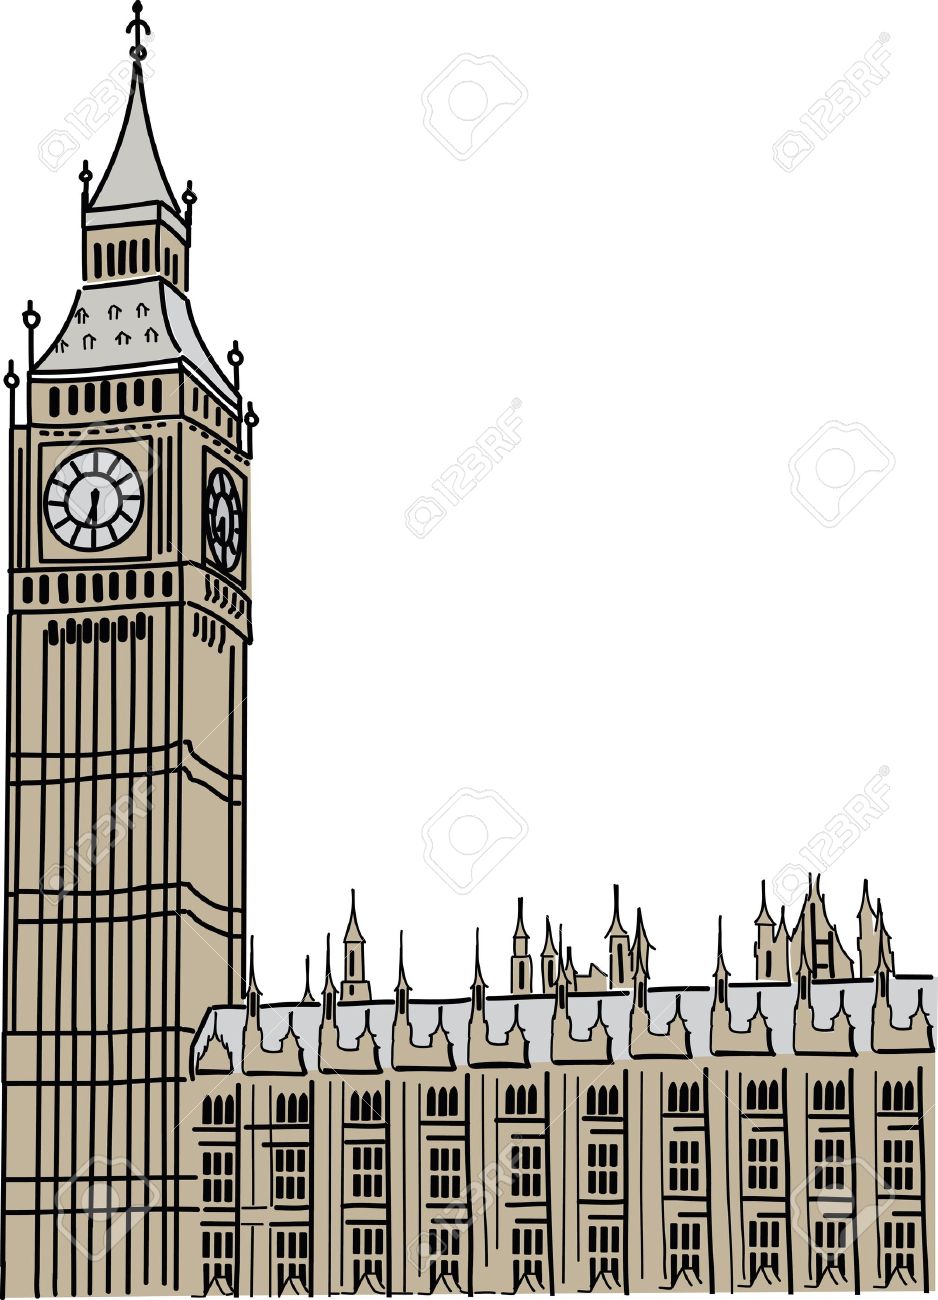 Big Ben in London Stock Vecto - Big Ben Clipart